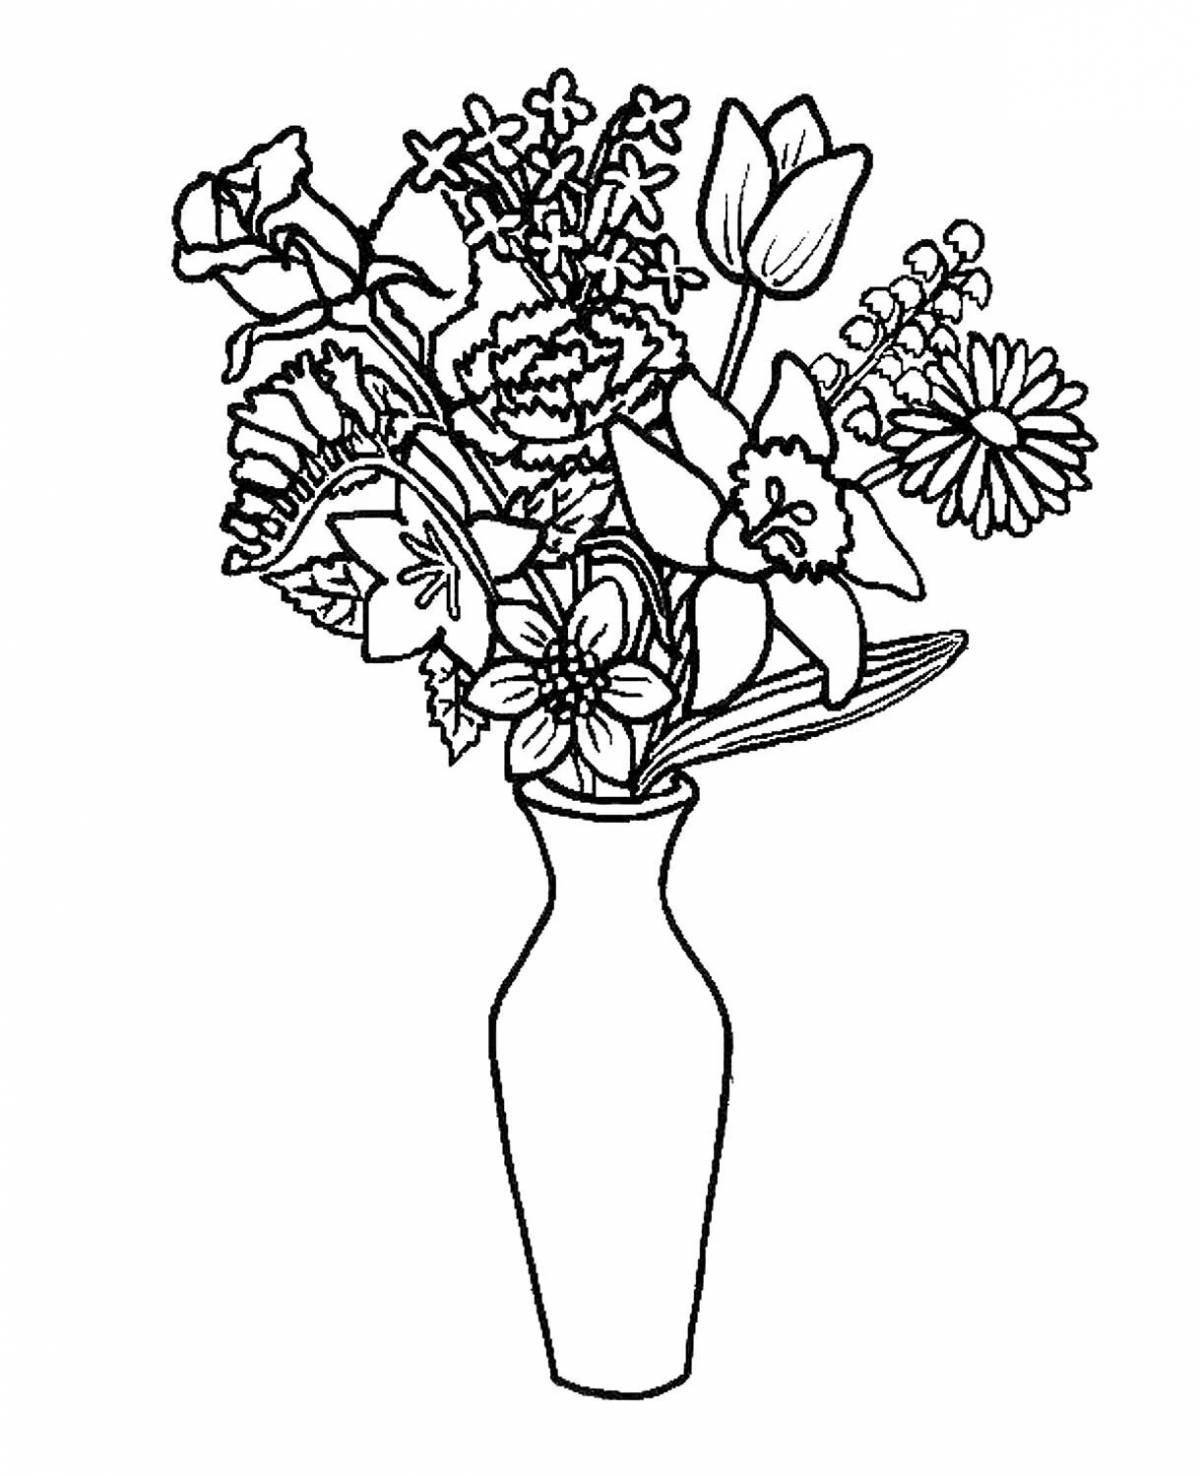 Elegant coloring of a rose in a vase